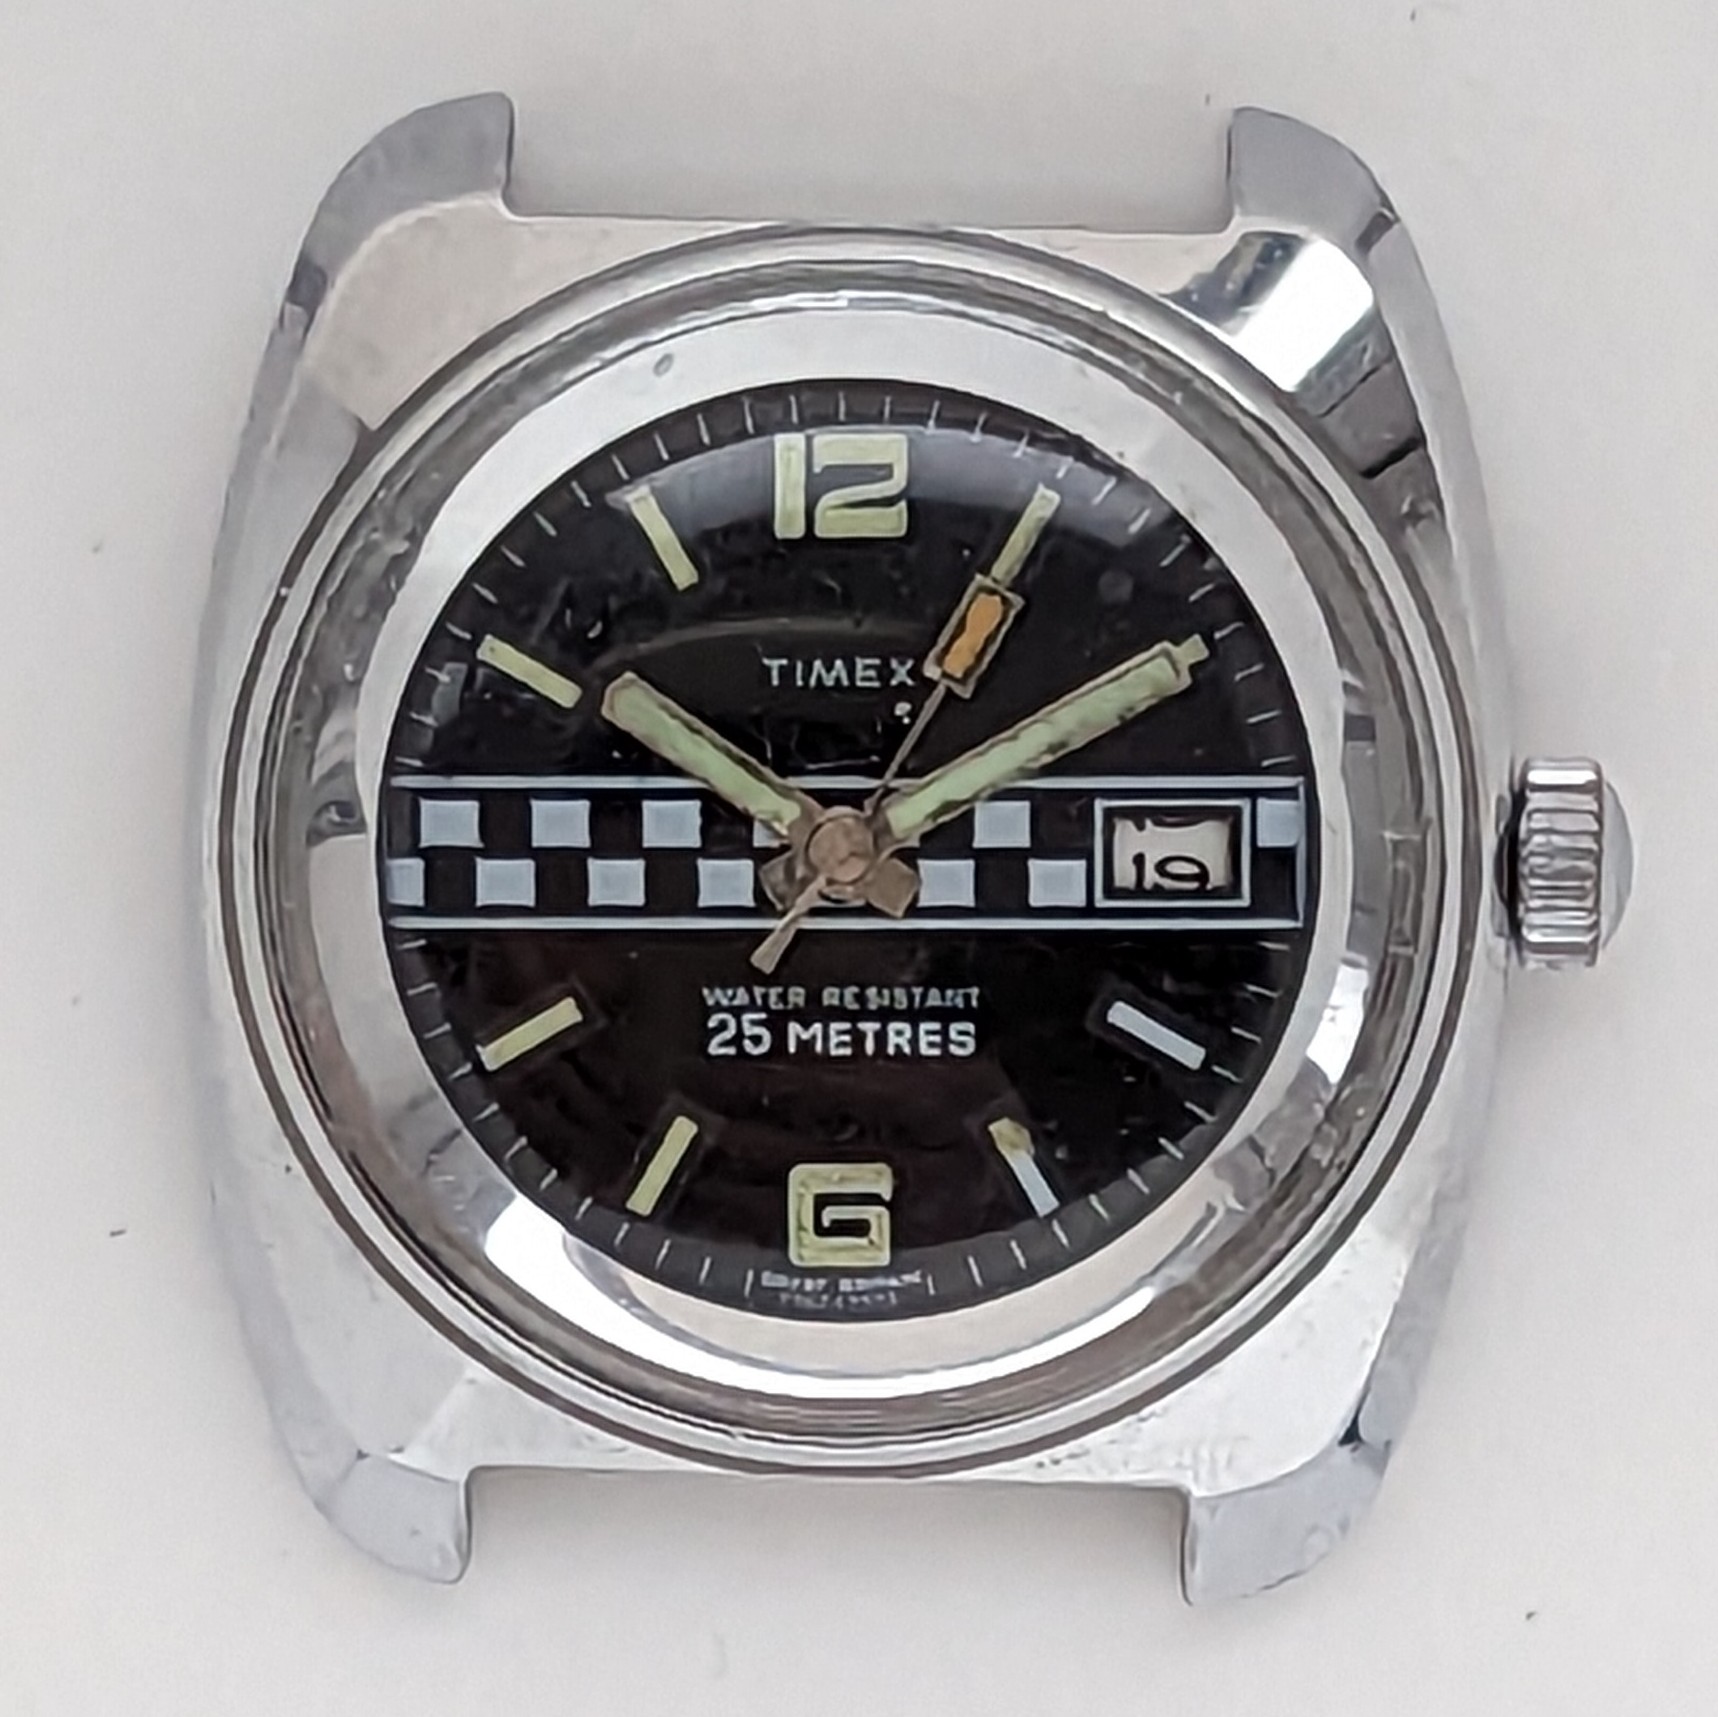 Timex Marlin 27674 2573 [1975] Dive Watch